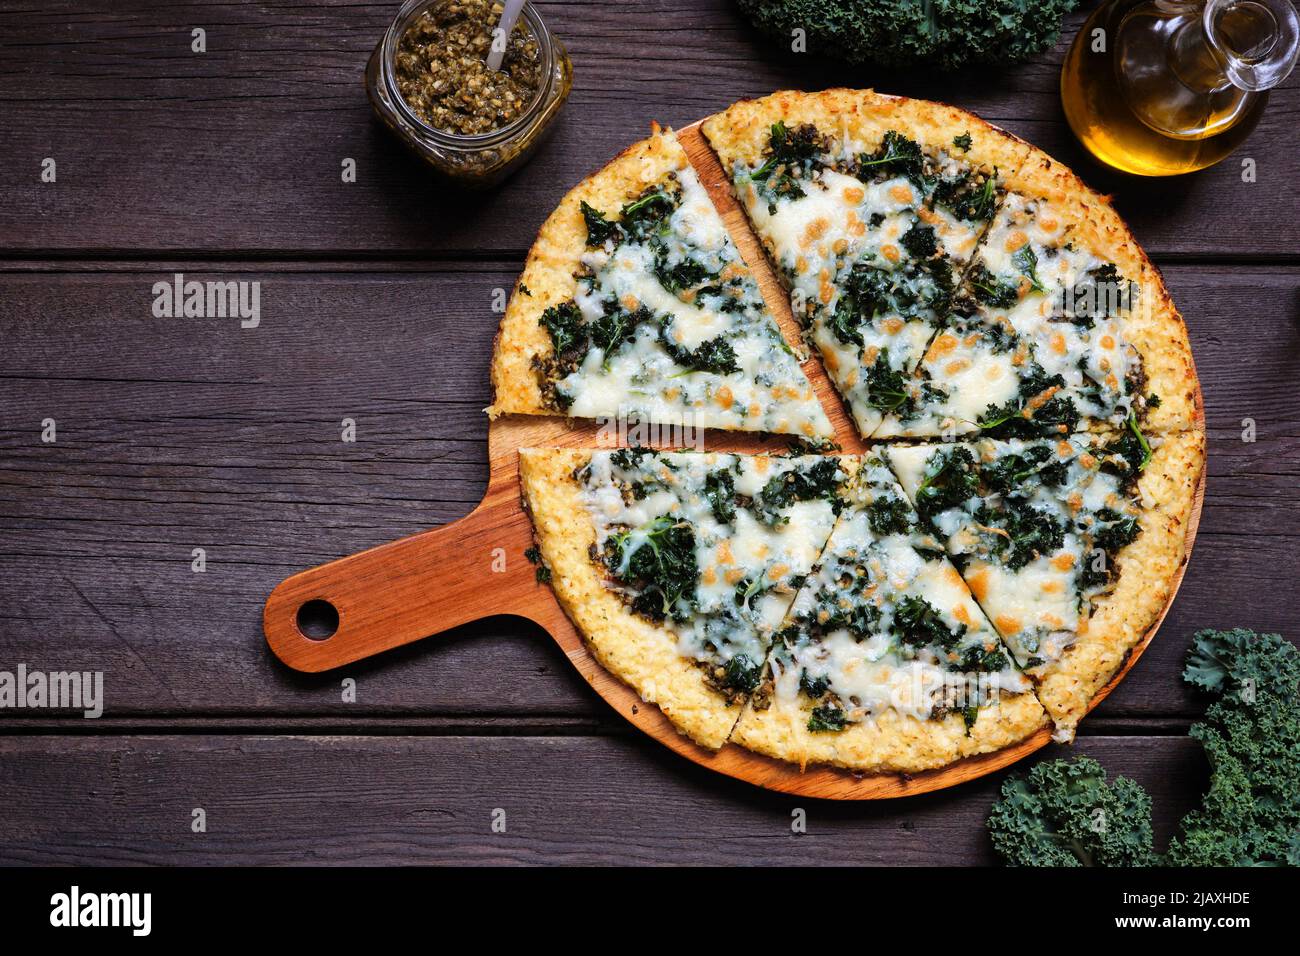 Gesunde, kohlenhydratarme Blumenkohlkruste Pizza mit Grünkohl und Pesto-Sauce. Obere Ansicht mit geschnittenen Schichten. Tischszene auf dunklem Holzhintergrund. Stockfoto